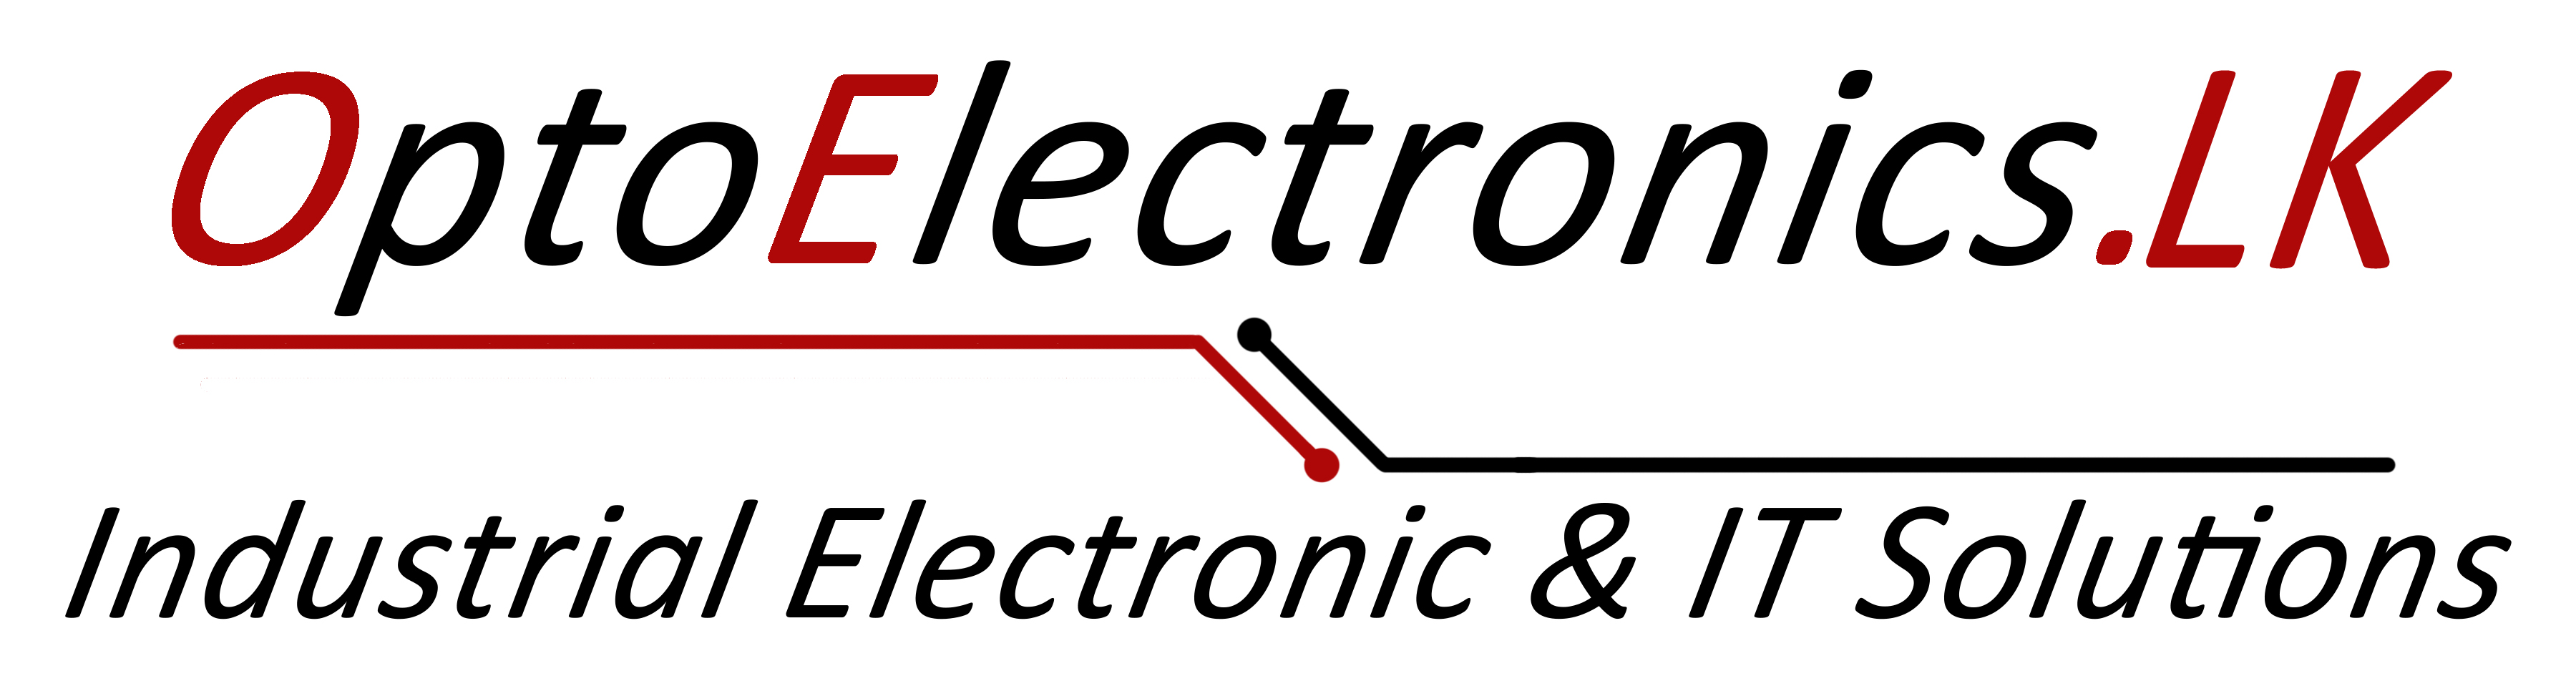 OptoElectronics.lk logo